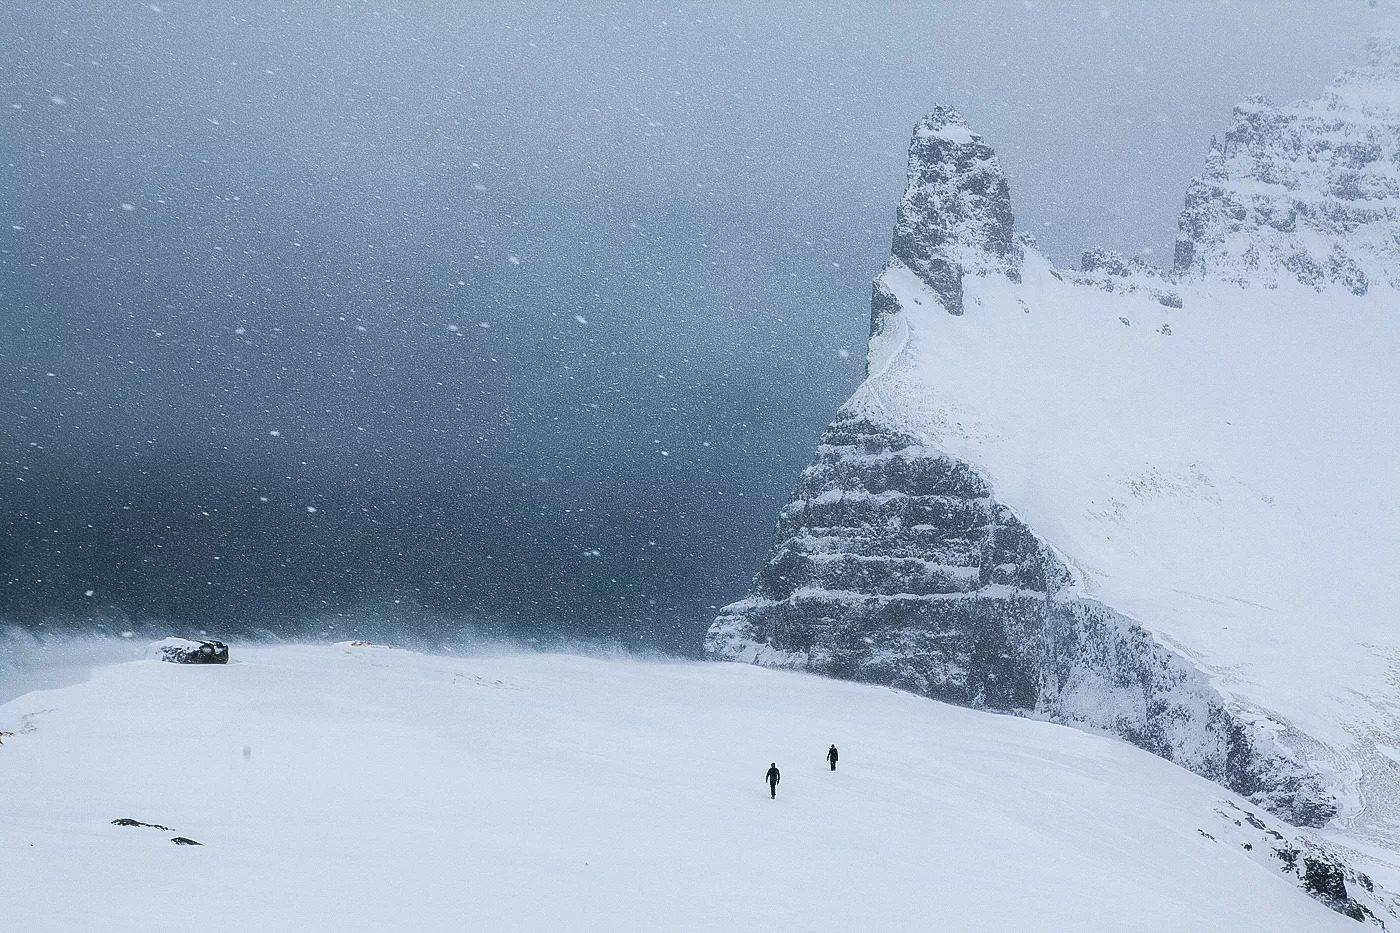 ijsland fotografie reis expeditie